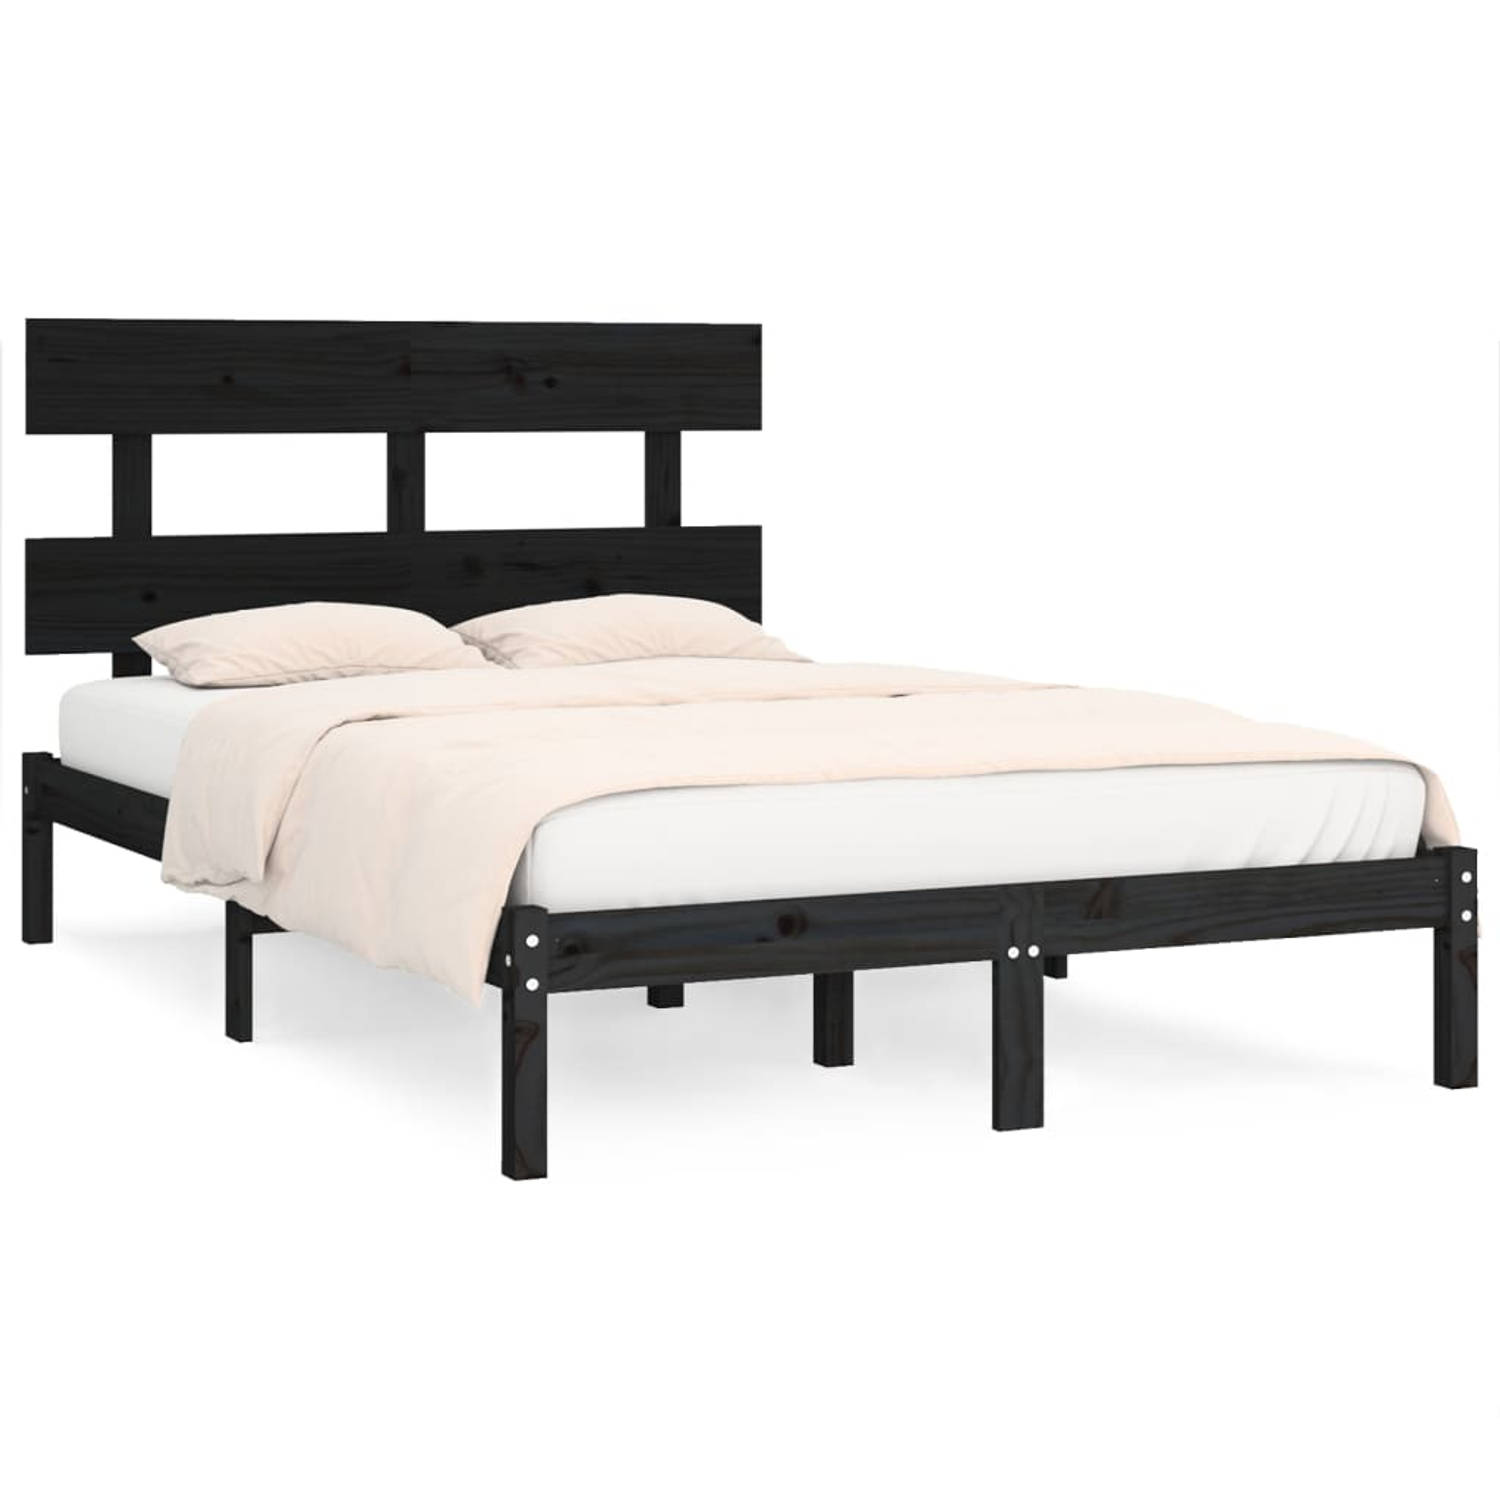 The Living Store Bedframe massief hout zwart 180x200 cm 6FT Super King - Bedframe - Bedframes - Tweepersoonsbed - Bed - Bedombouw - Dubbel Bed - Frame - Bed Frame - Ledikant - Bedf